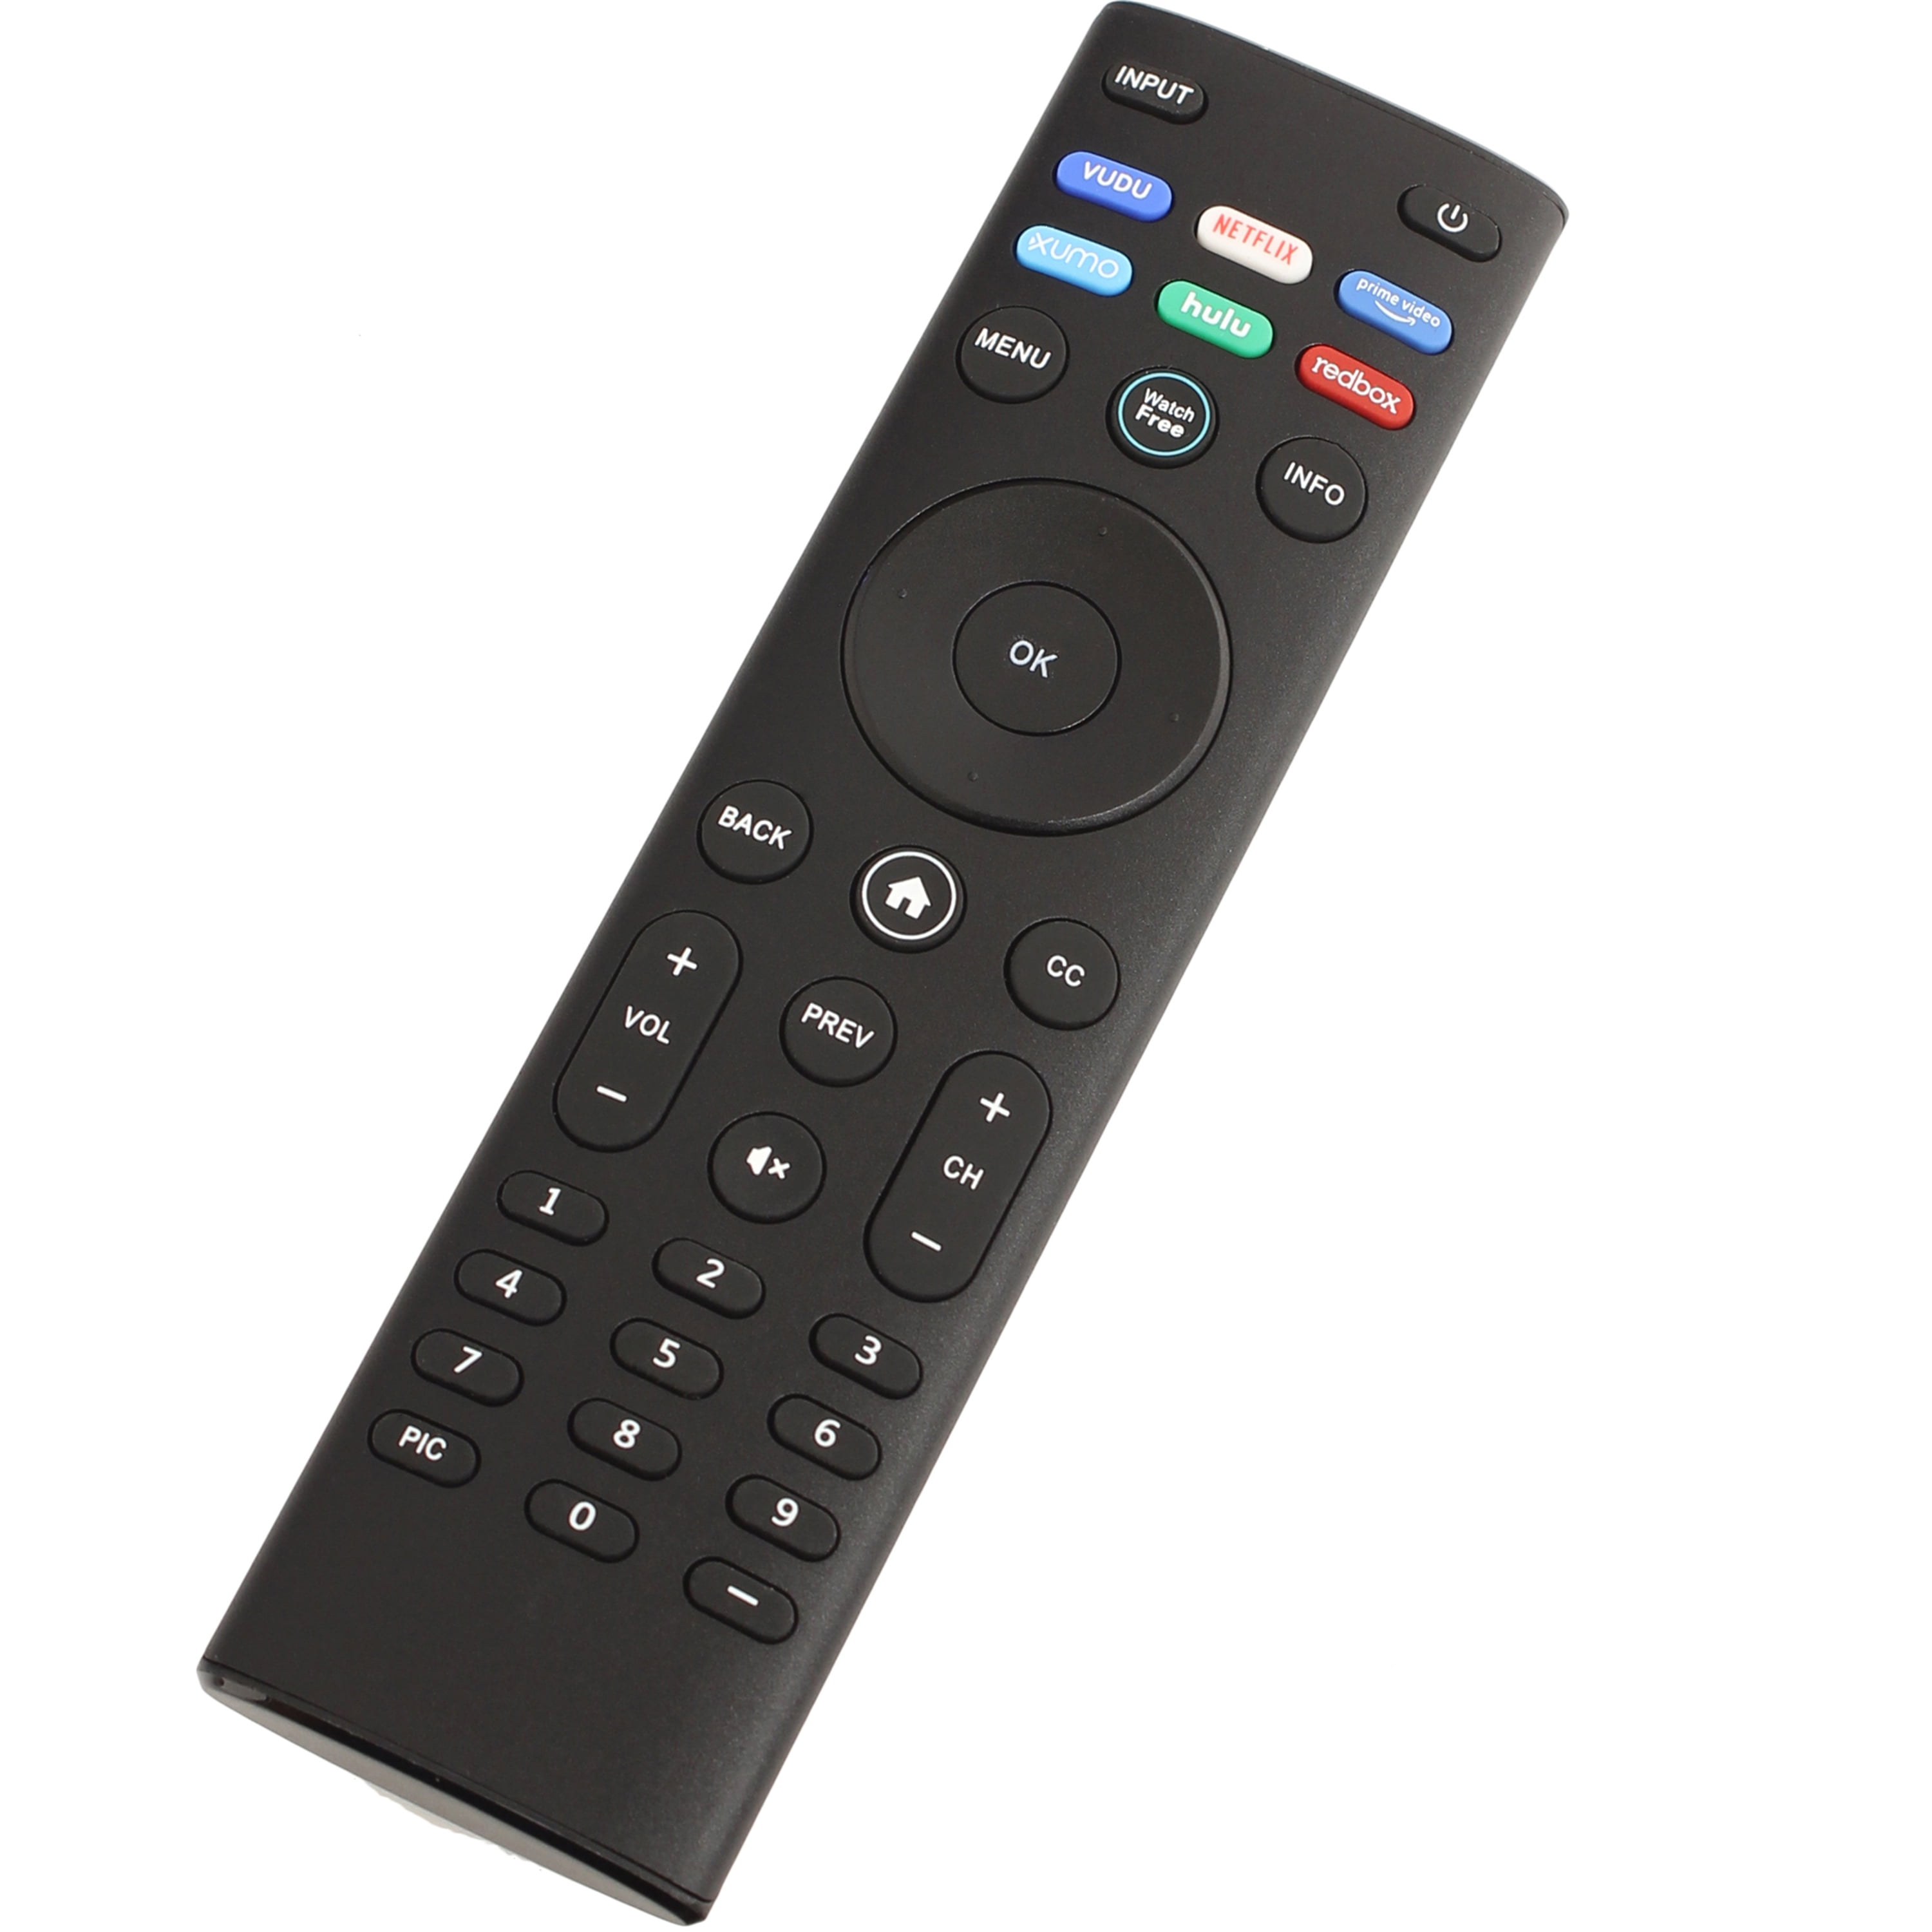 XRT140 Watchfree Smart TV Remote Works with All VIZIO Smart TVs